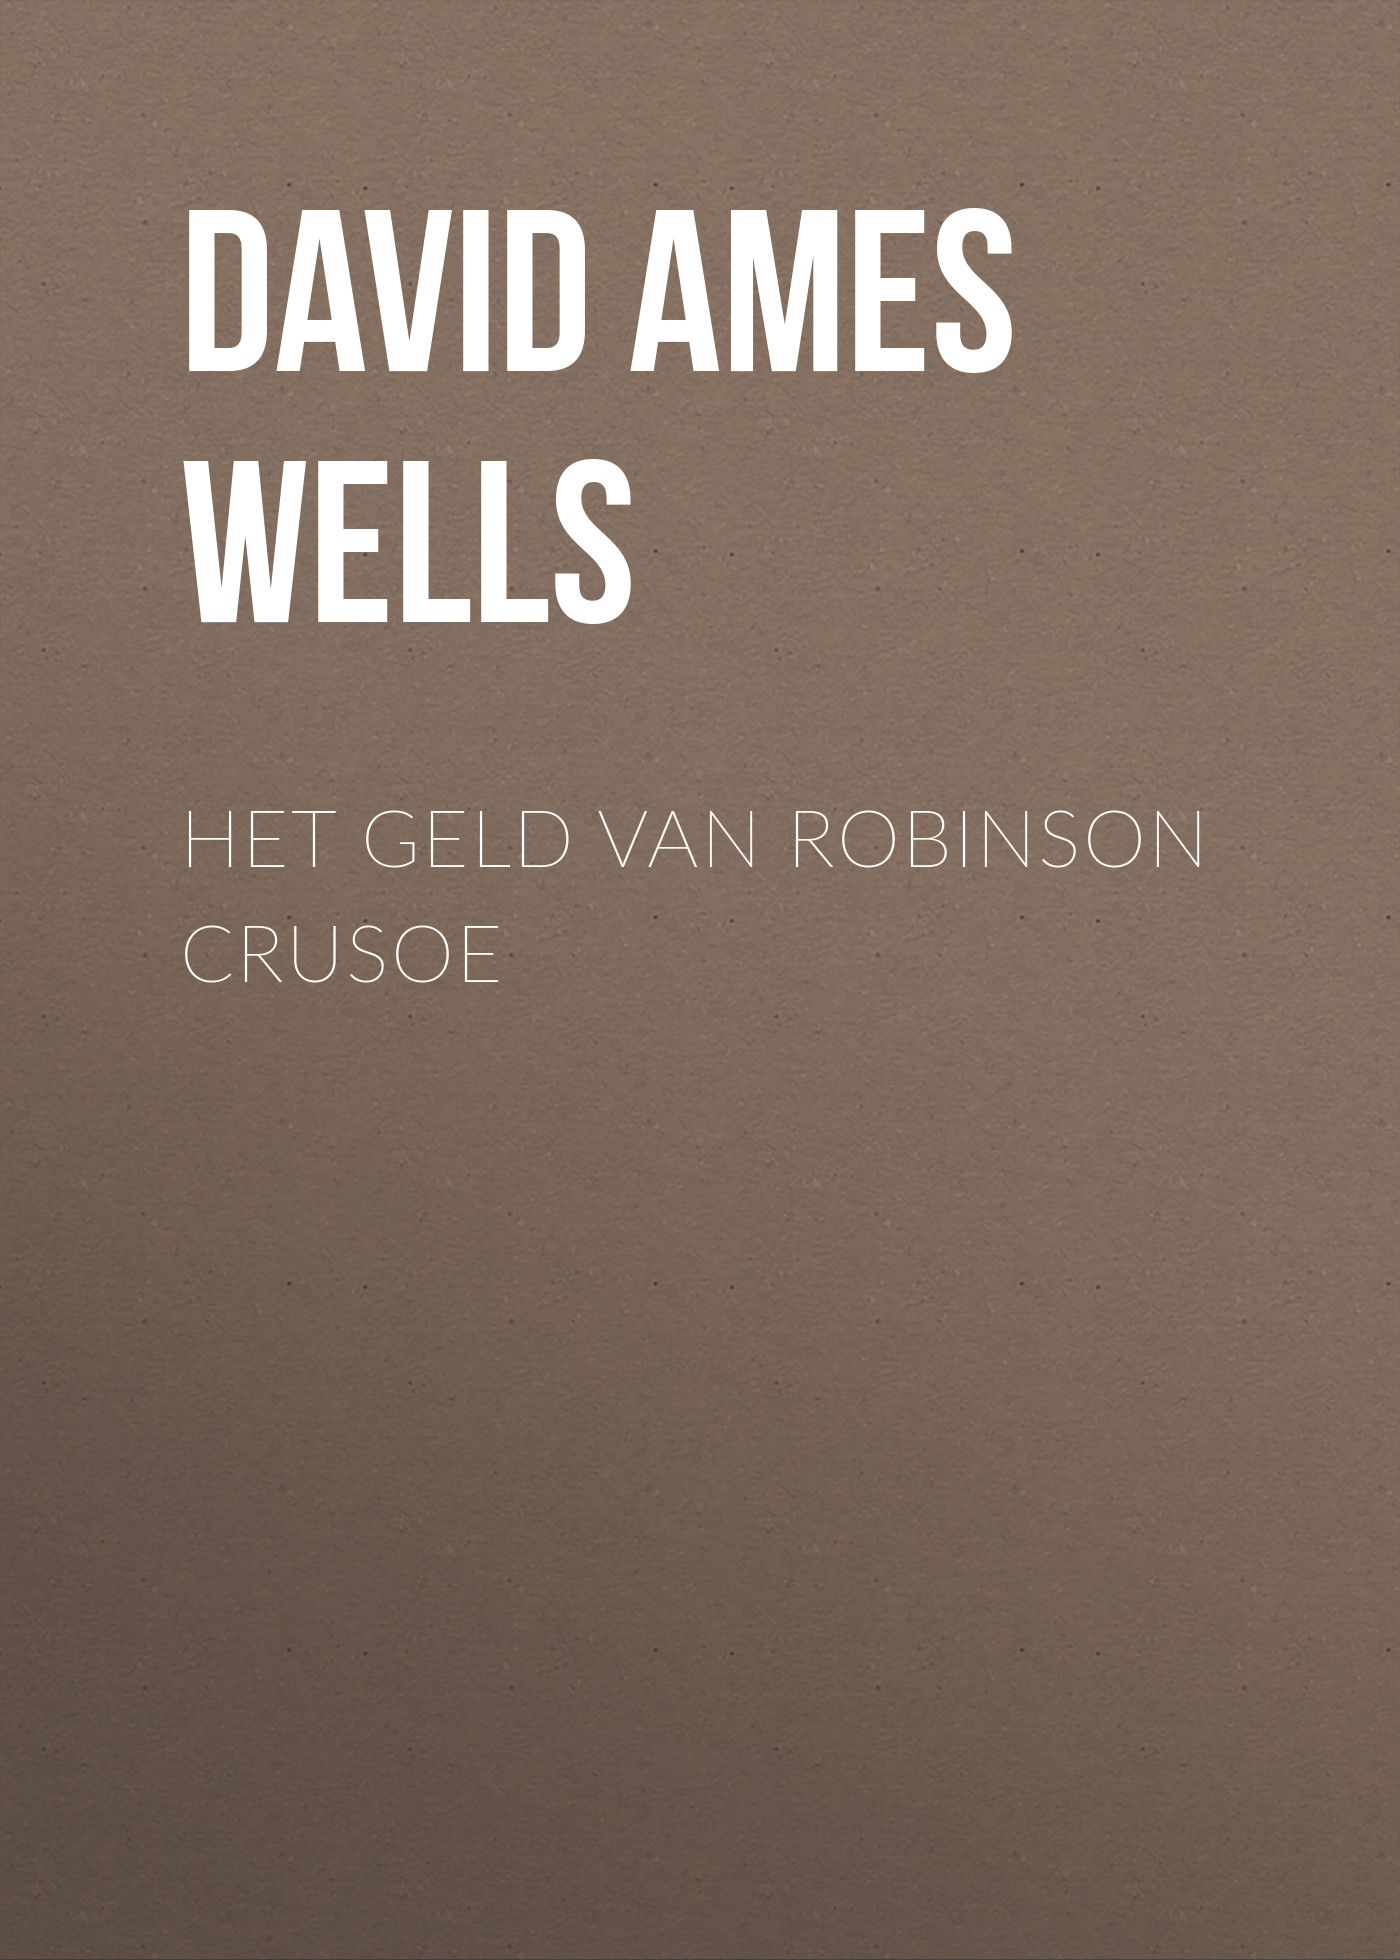 Книга Het Geld van Robinson Crusoe из серии , созданная David Ames Wells, может относится к жанру О бизнесе популярно, Зарубежная образовательная литература. Стоимость электронной книги Het Geld van Robinson Crusoe с идентификатором 34337530 составляет 0 руб.